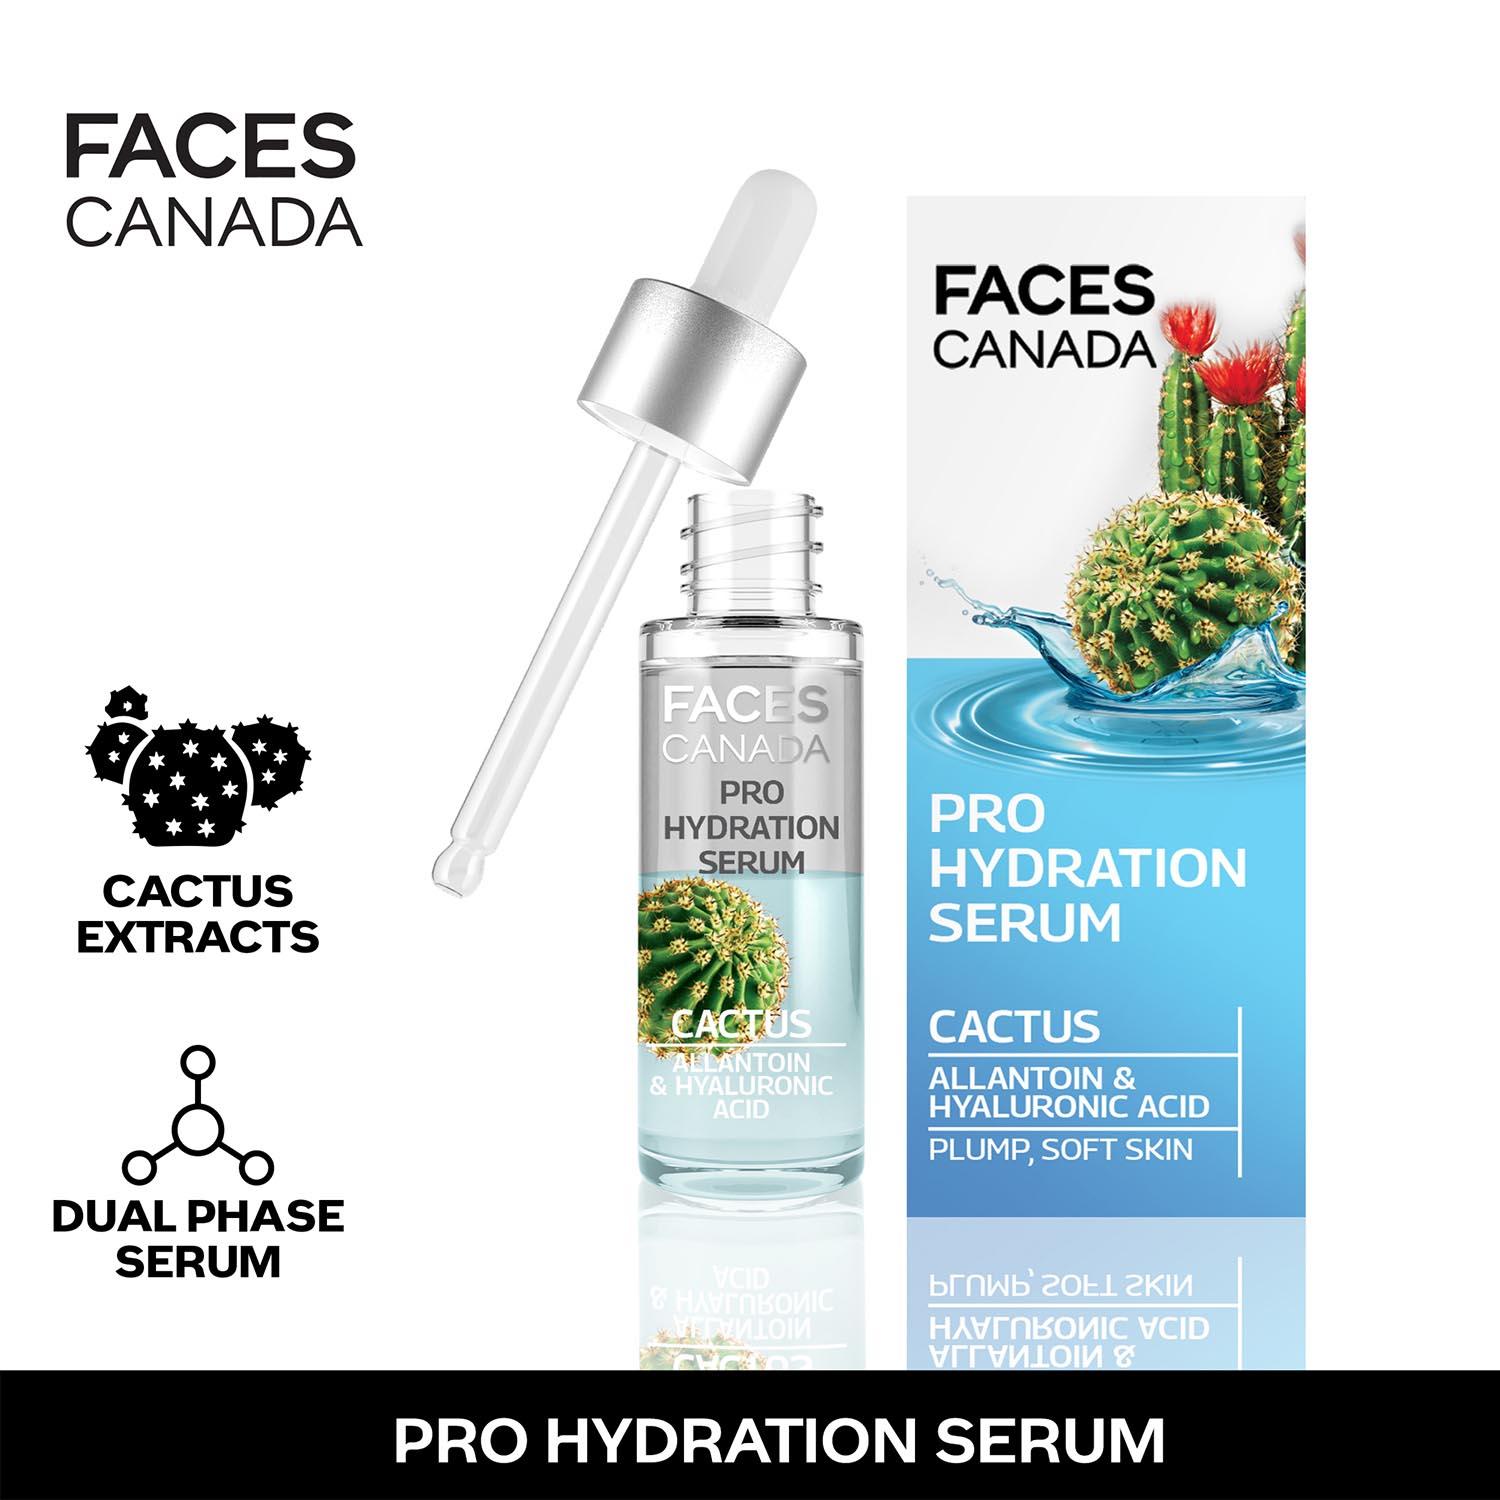 Faces Canada | Faces Canada Pro Hydration Serum Cactus I Hydrating Biphasic Serum I Hyaluronic acid I (27 ml)